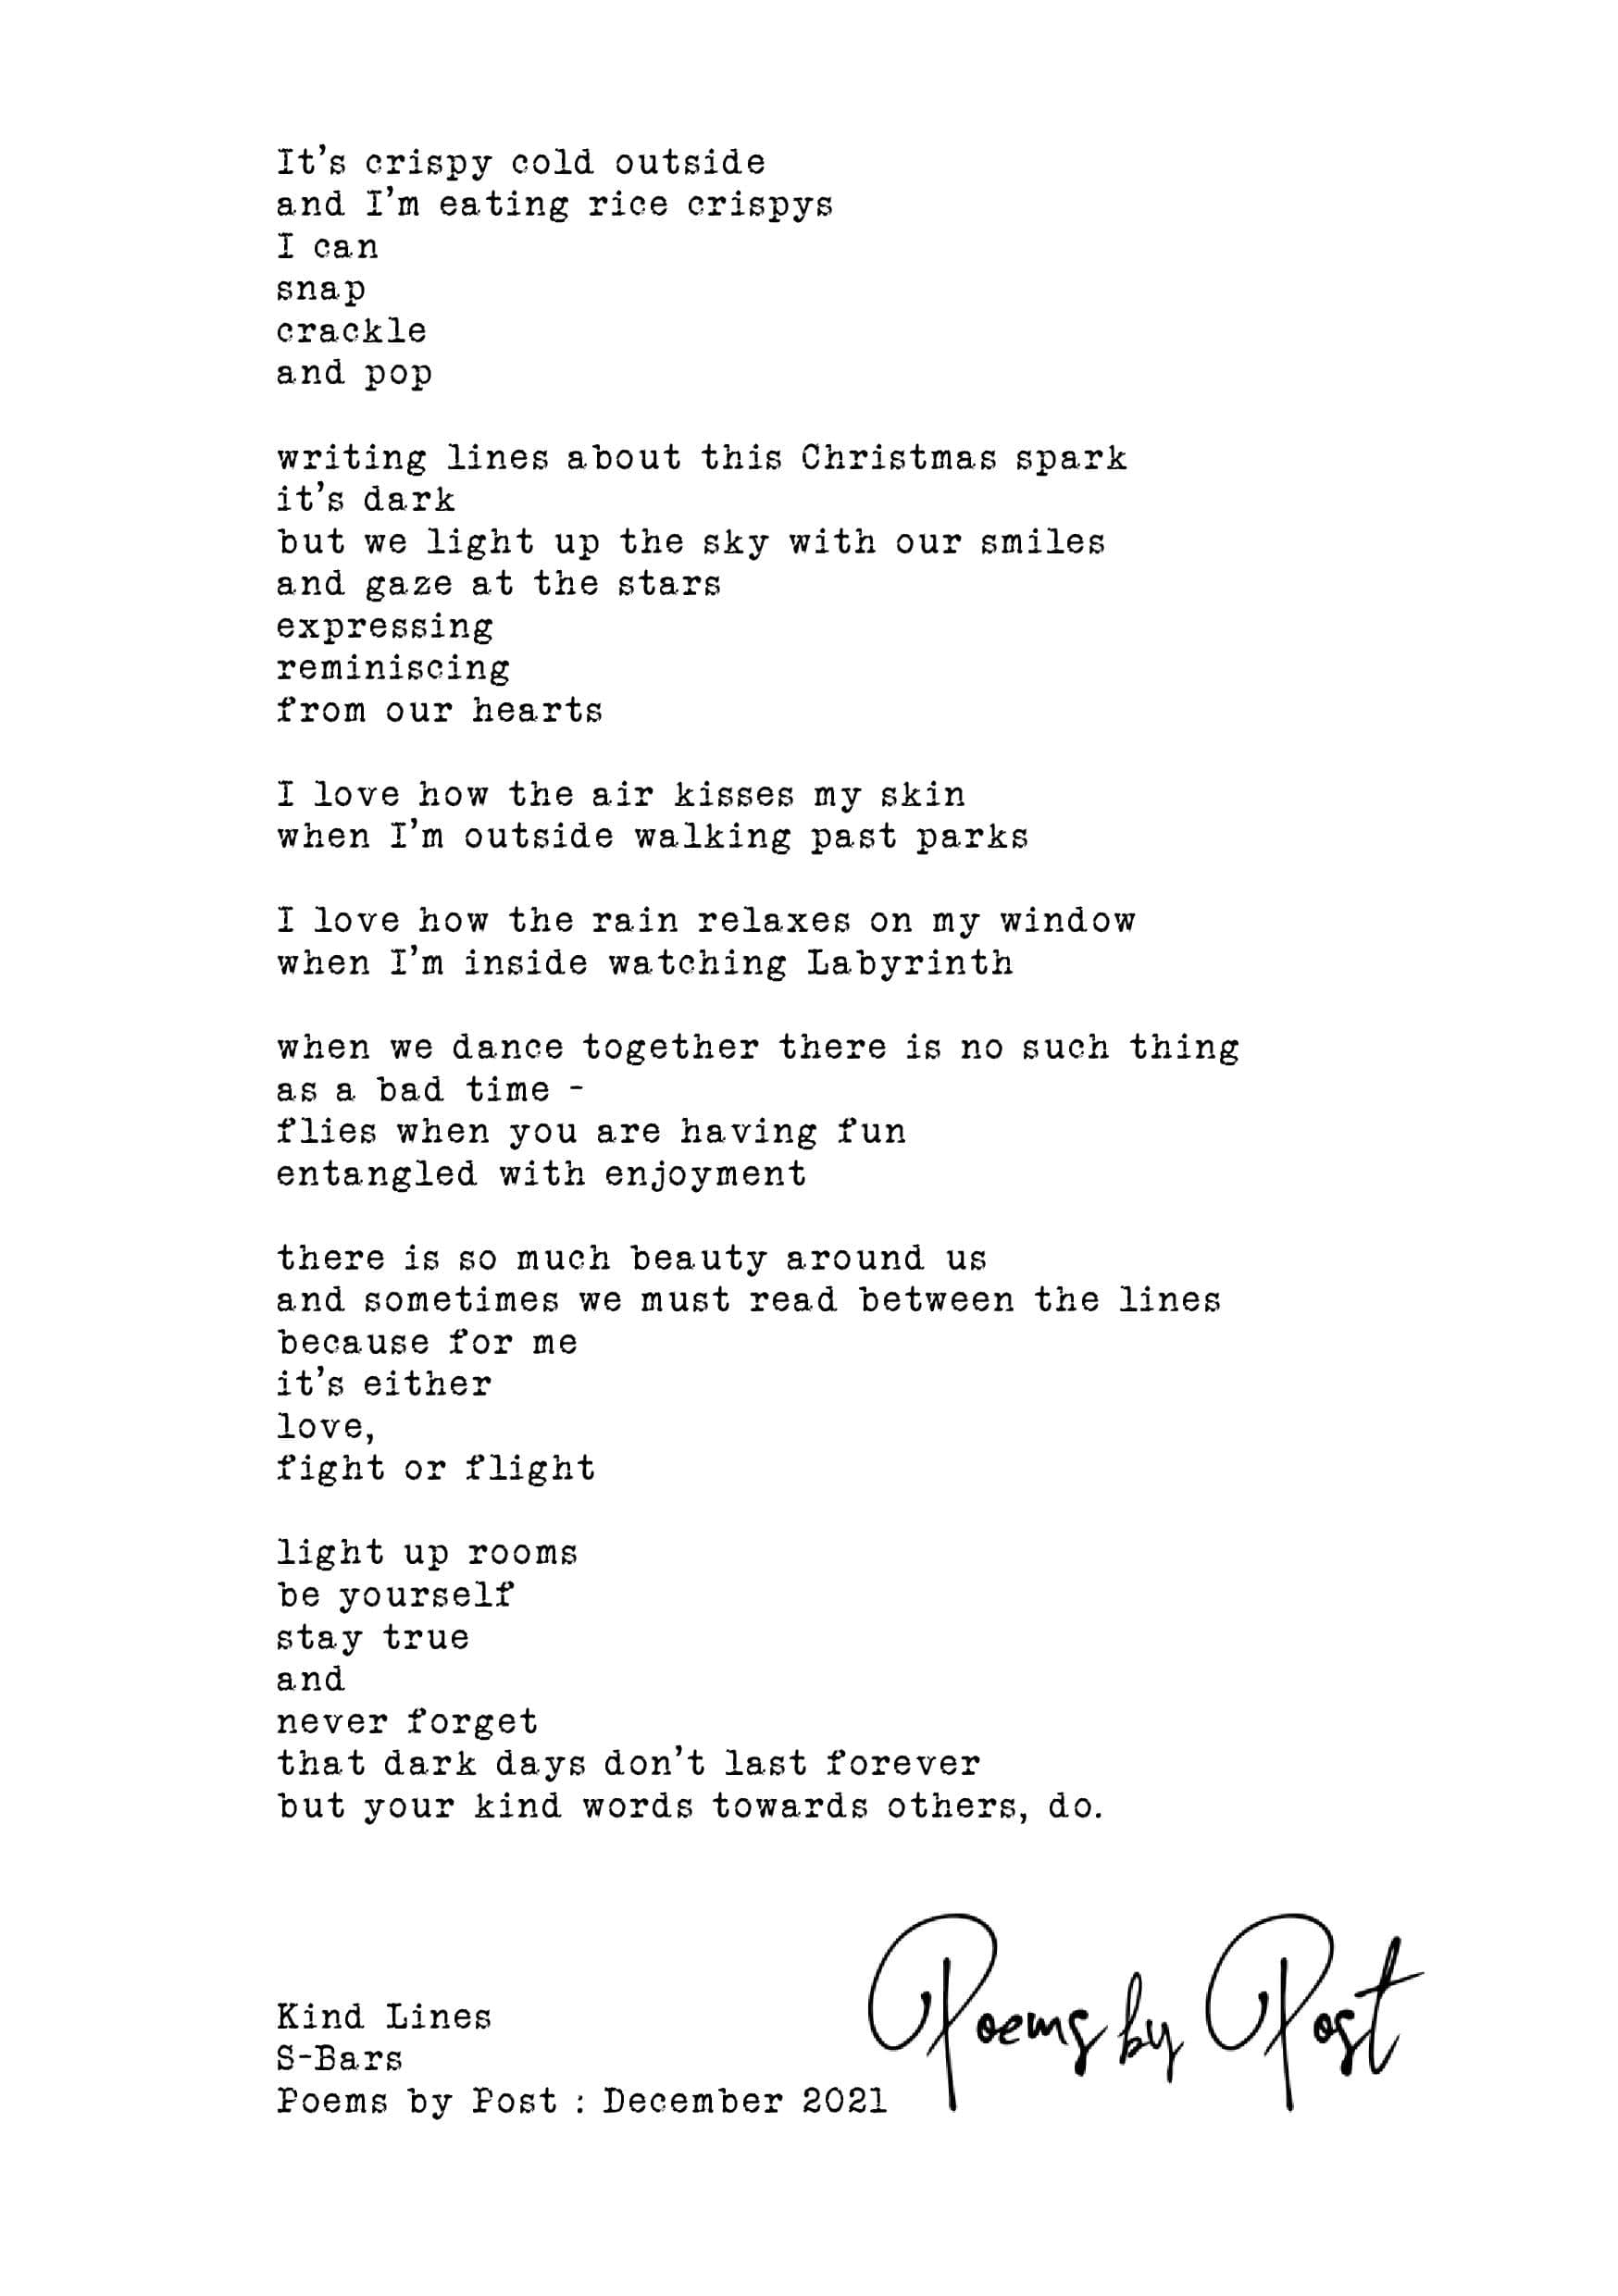 Kind Lines poem